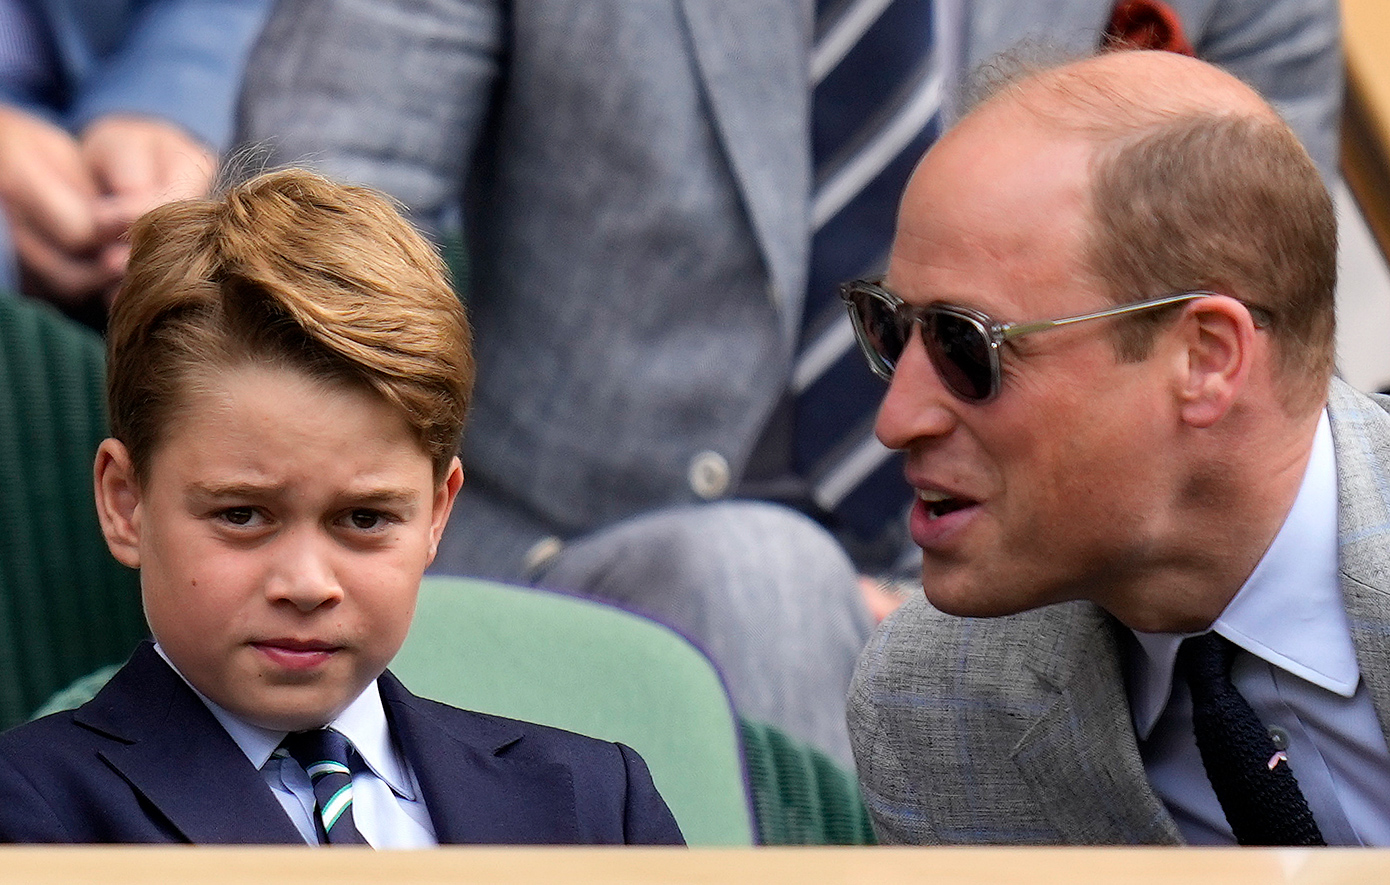 Πρώτη δημόσια έξοδος για τον πρίγκιπα Ουίλιαμ και τον γιο του μετά τη διάγνωση της Κέιτ με καρκίνο